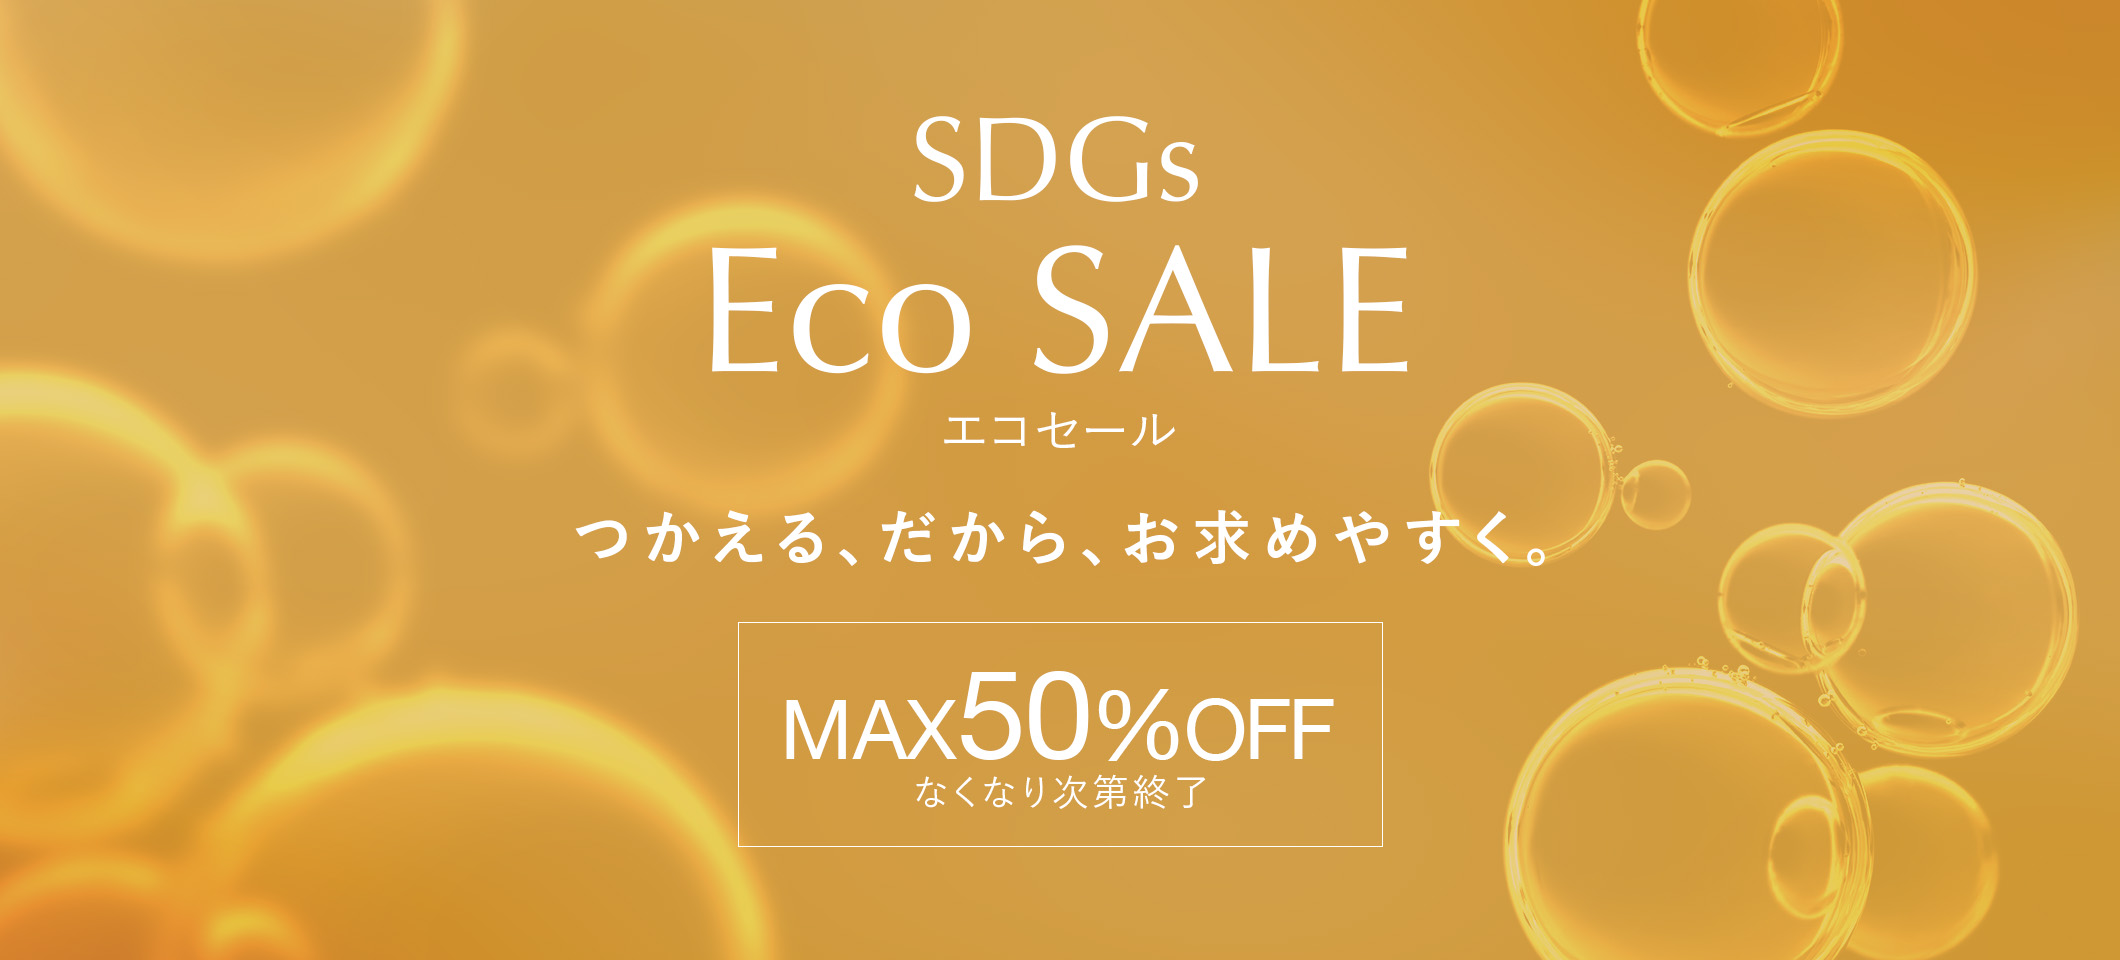 SDGs Eco SALE つかえる、だから、お求めやすく。MAX50%OFF